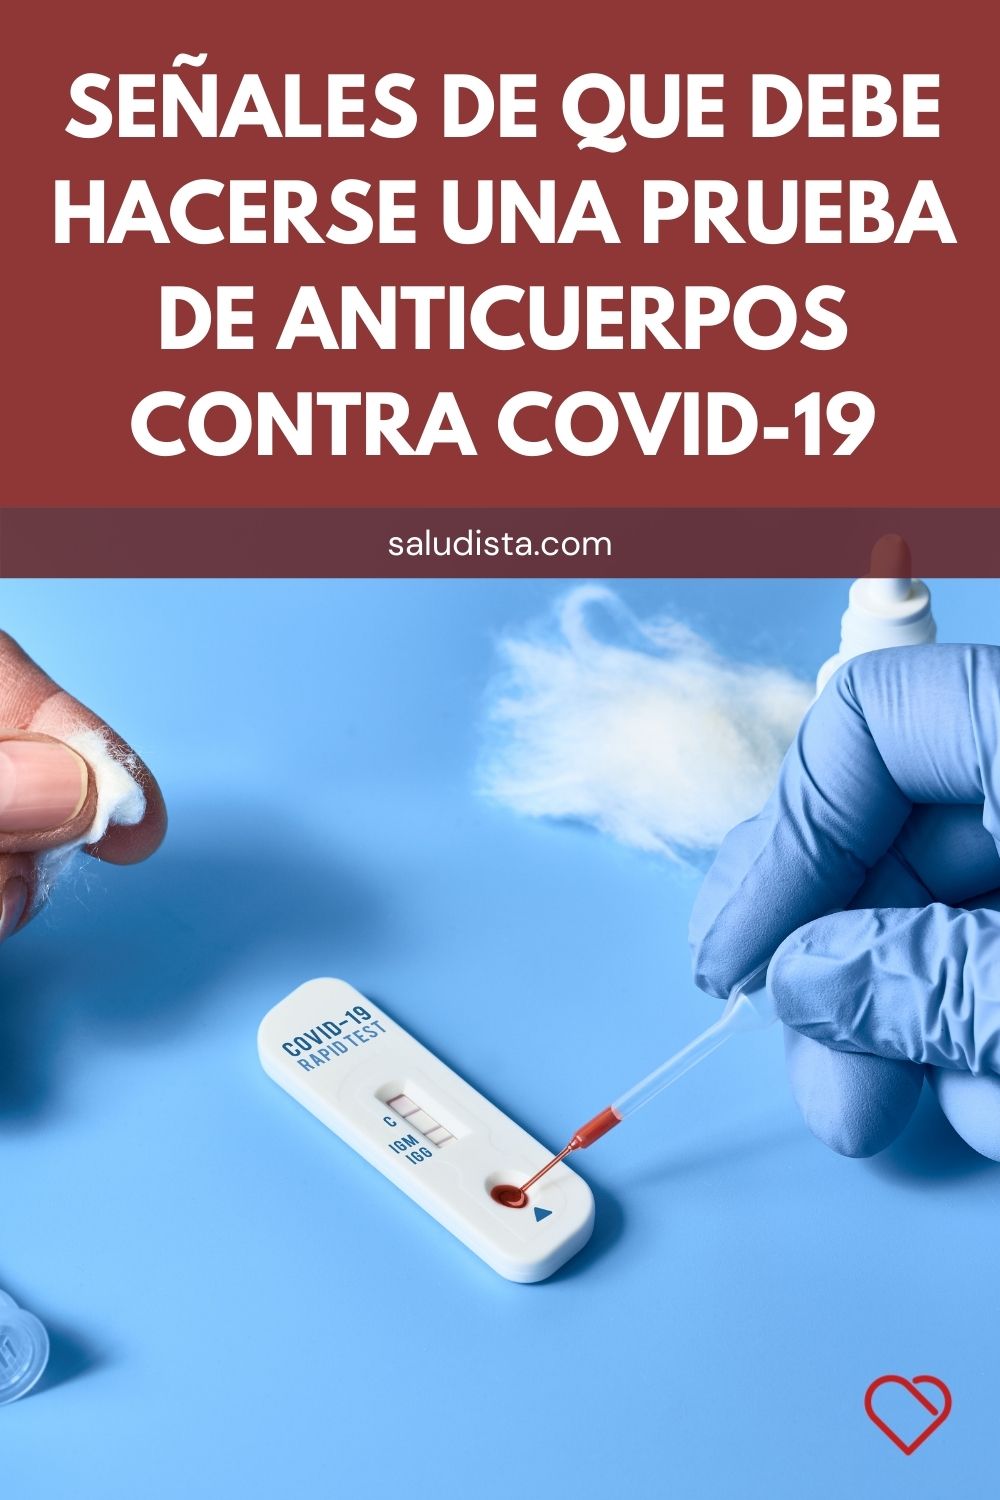 Señales de que debe hacerse una prueba de anticuerpos contra COVID-19